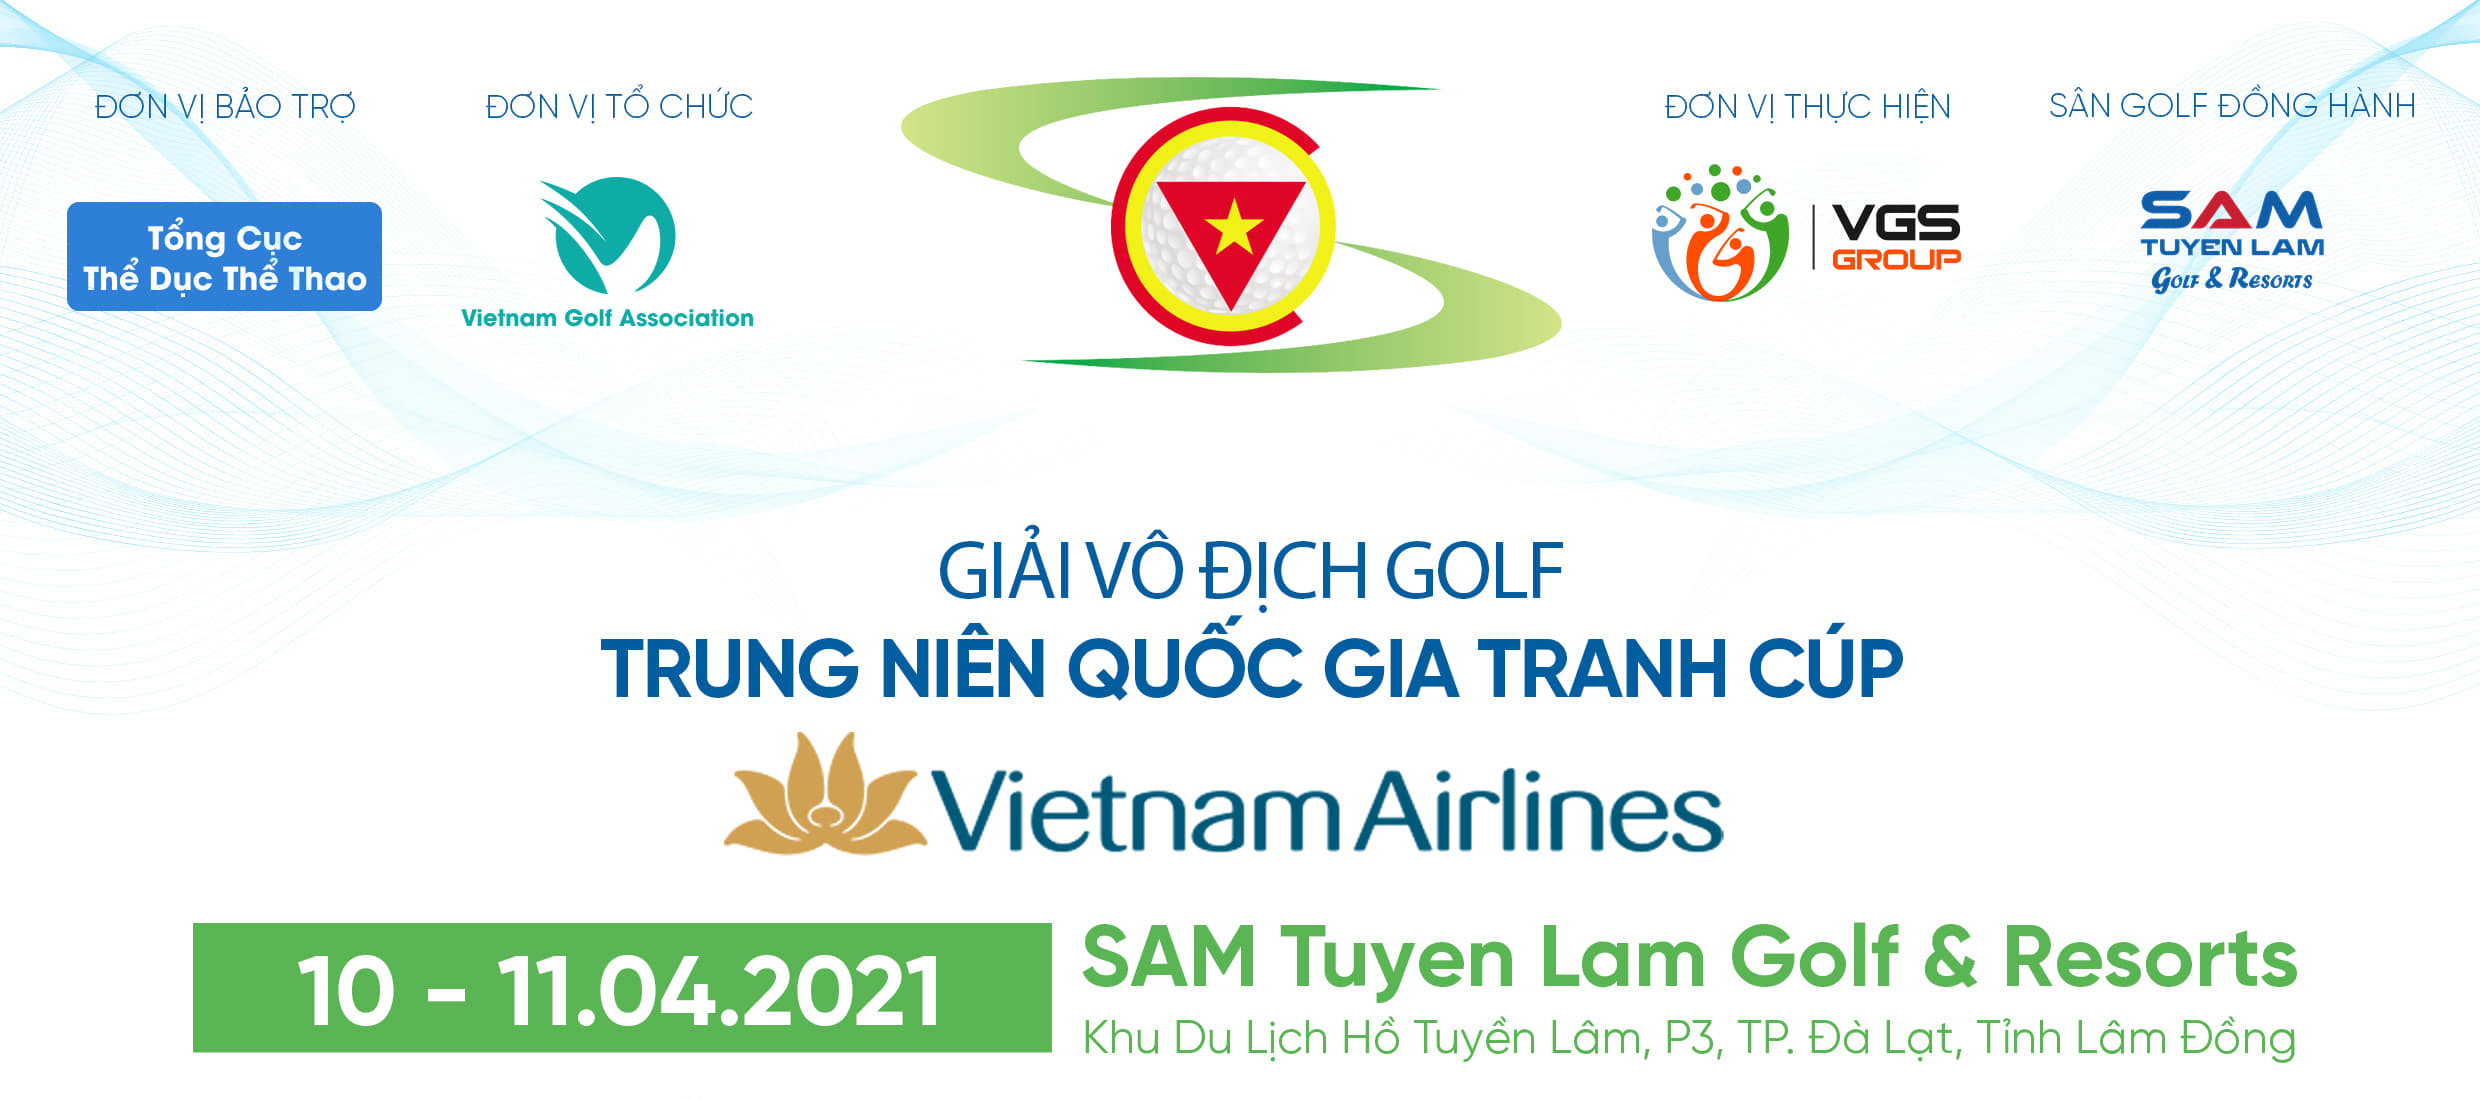 Giải Vô địch golf Trung niên Quốc gia tranh cúp Vietnam Airlines sẽ diễn ra tại SAM Tuyền Lâm